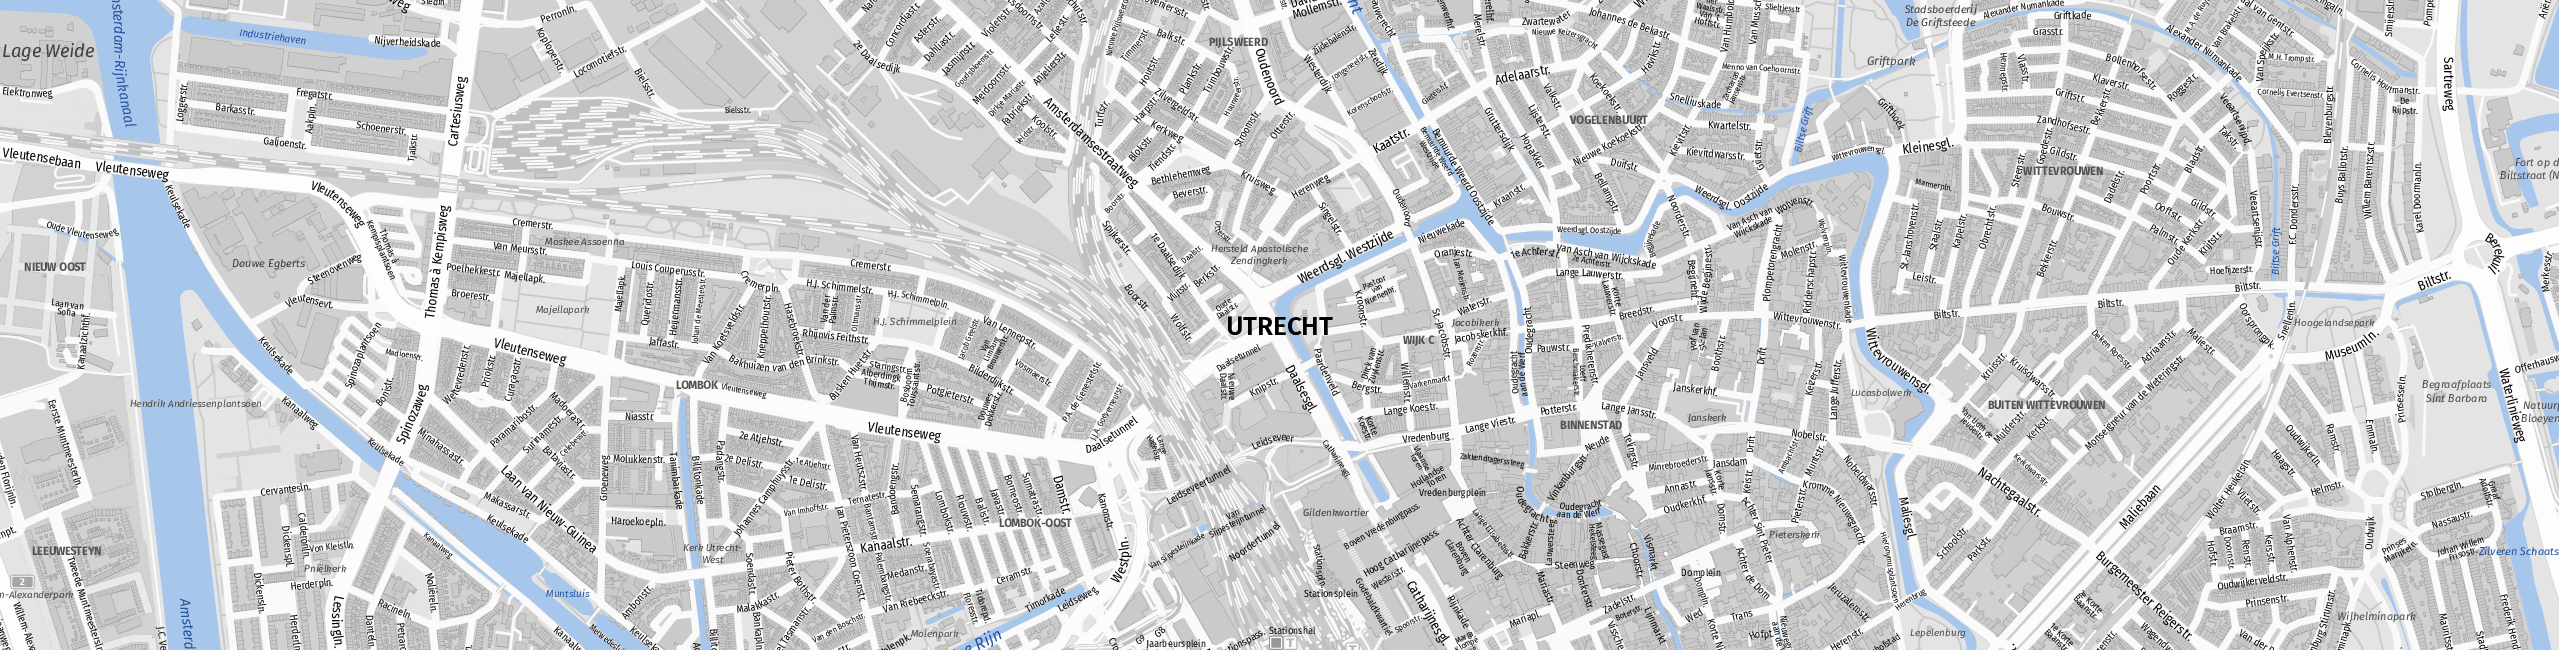 Stadtplan Utrecht zum Downloaden.